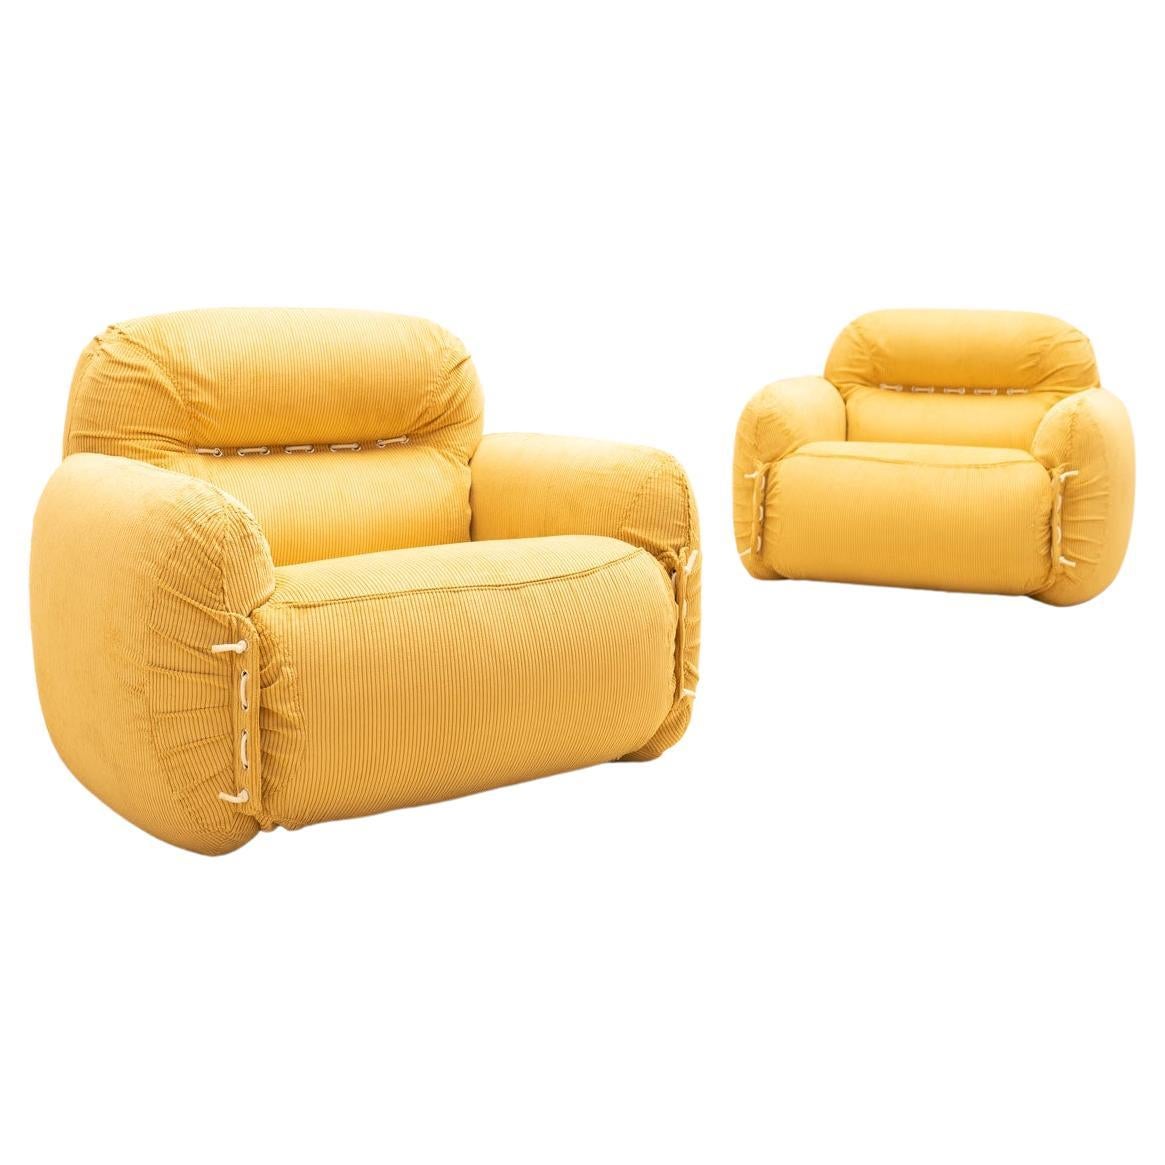 Ein sehr komfortables Design mit auffälligen Farben. Diese italienischen Sessel aus den 1970er Jahren wurden kürzlich mit leuchtend gelbem Kord bezogen. Ihre großzügige Form lädt zum Sitzen und Liegen ein und bietet höchsten Komfort.